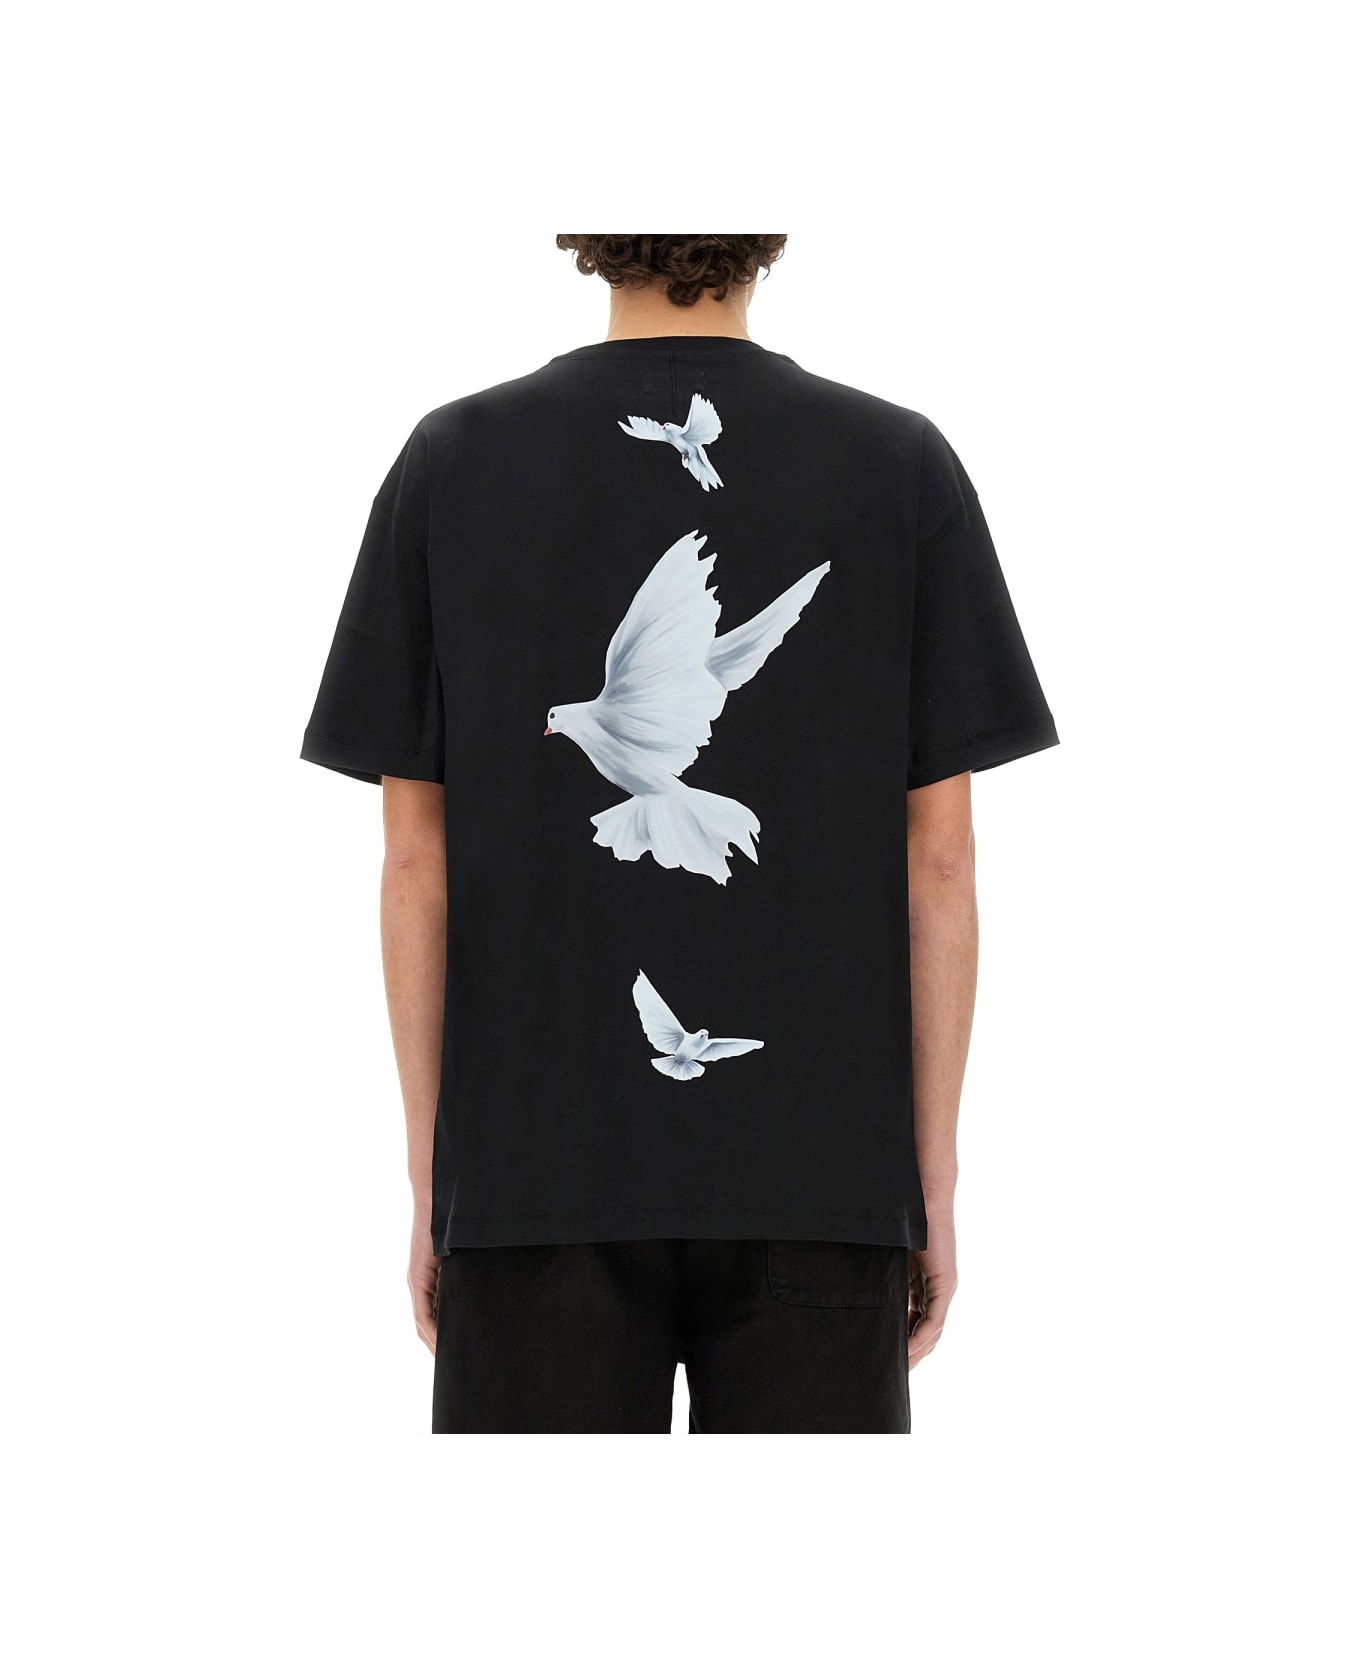 3.Paradis "freedom" T-shirt - BLACK シャツ